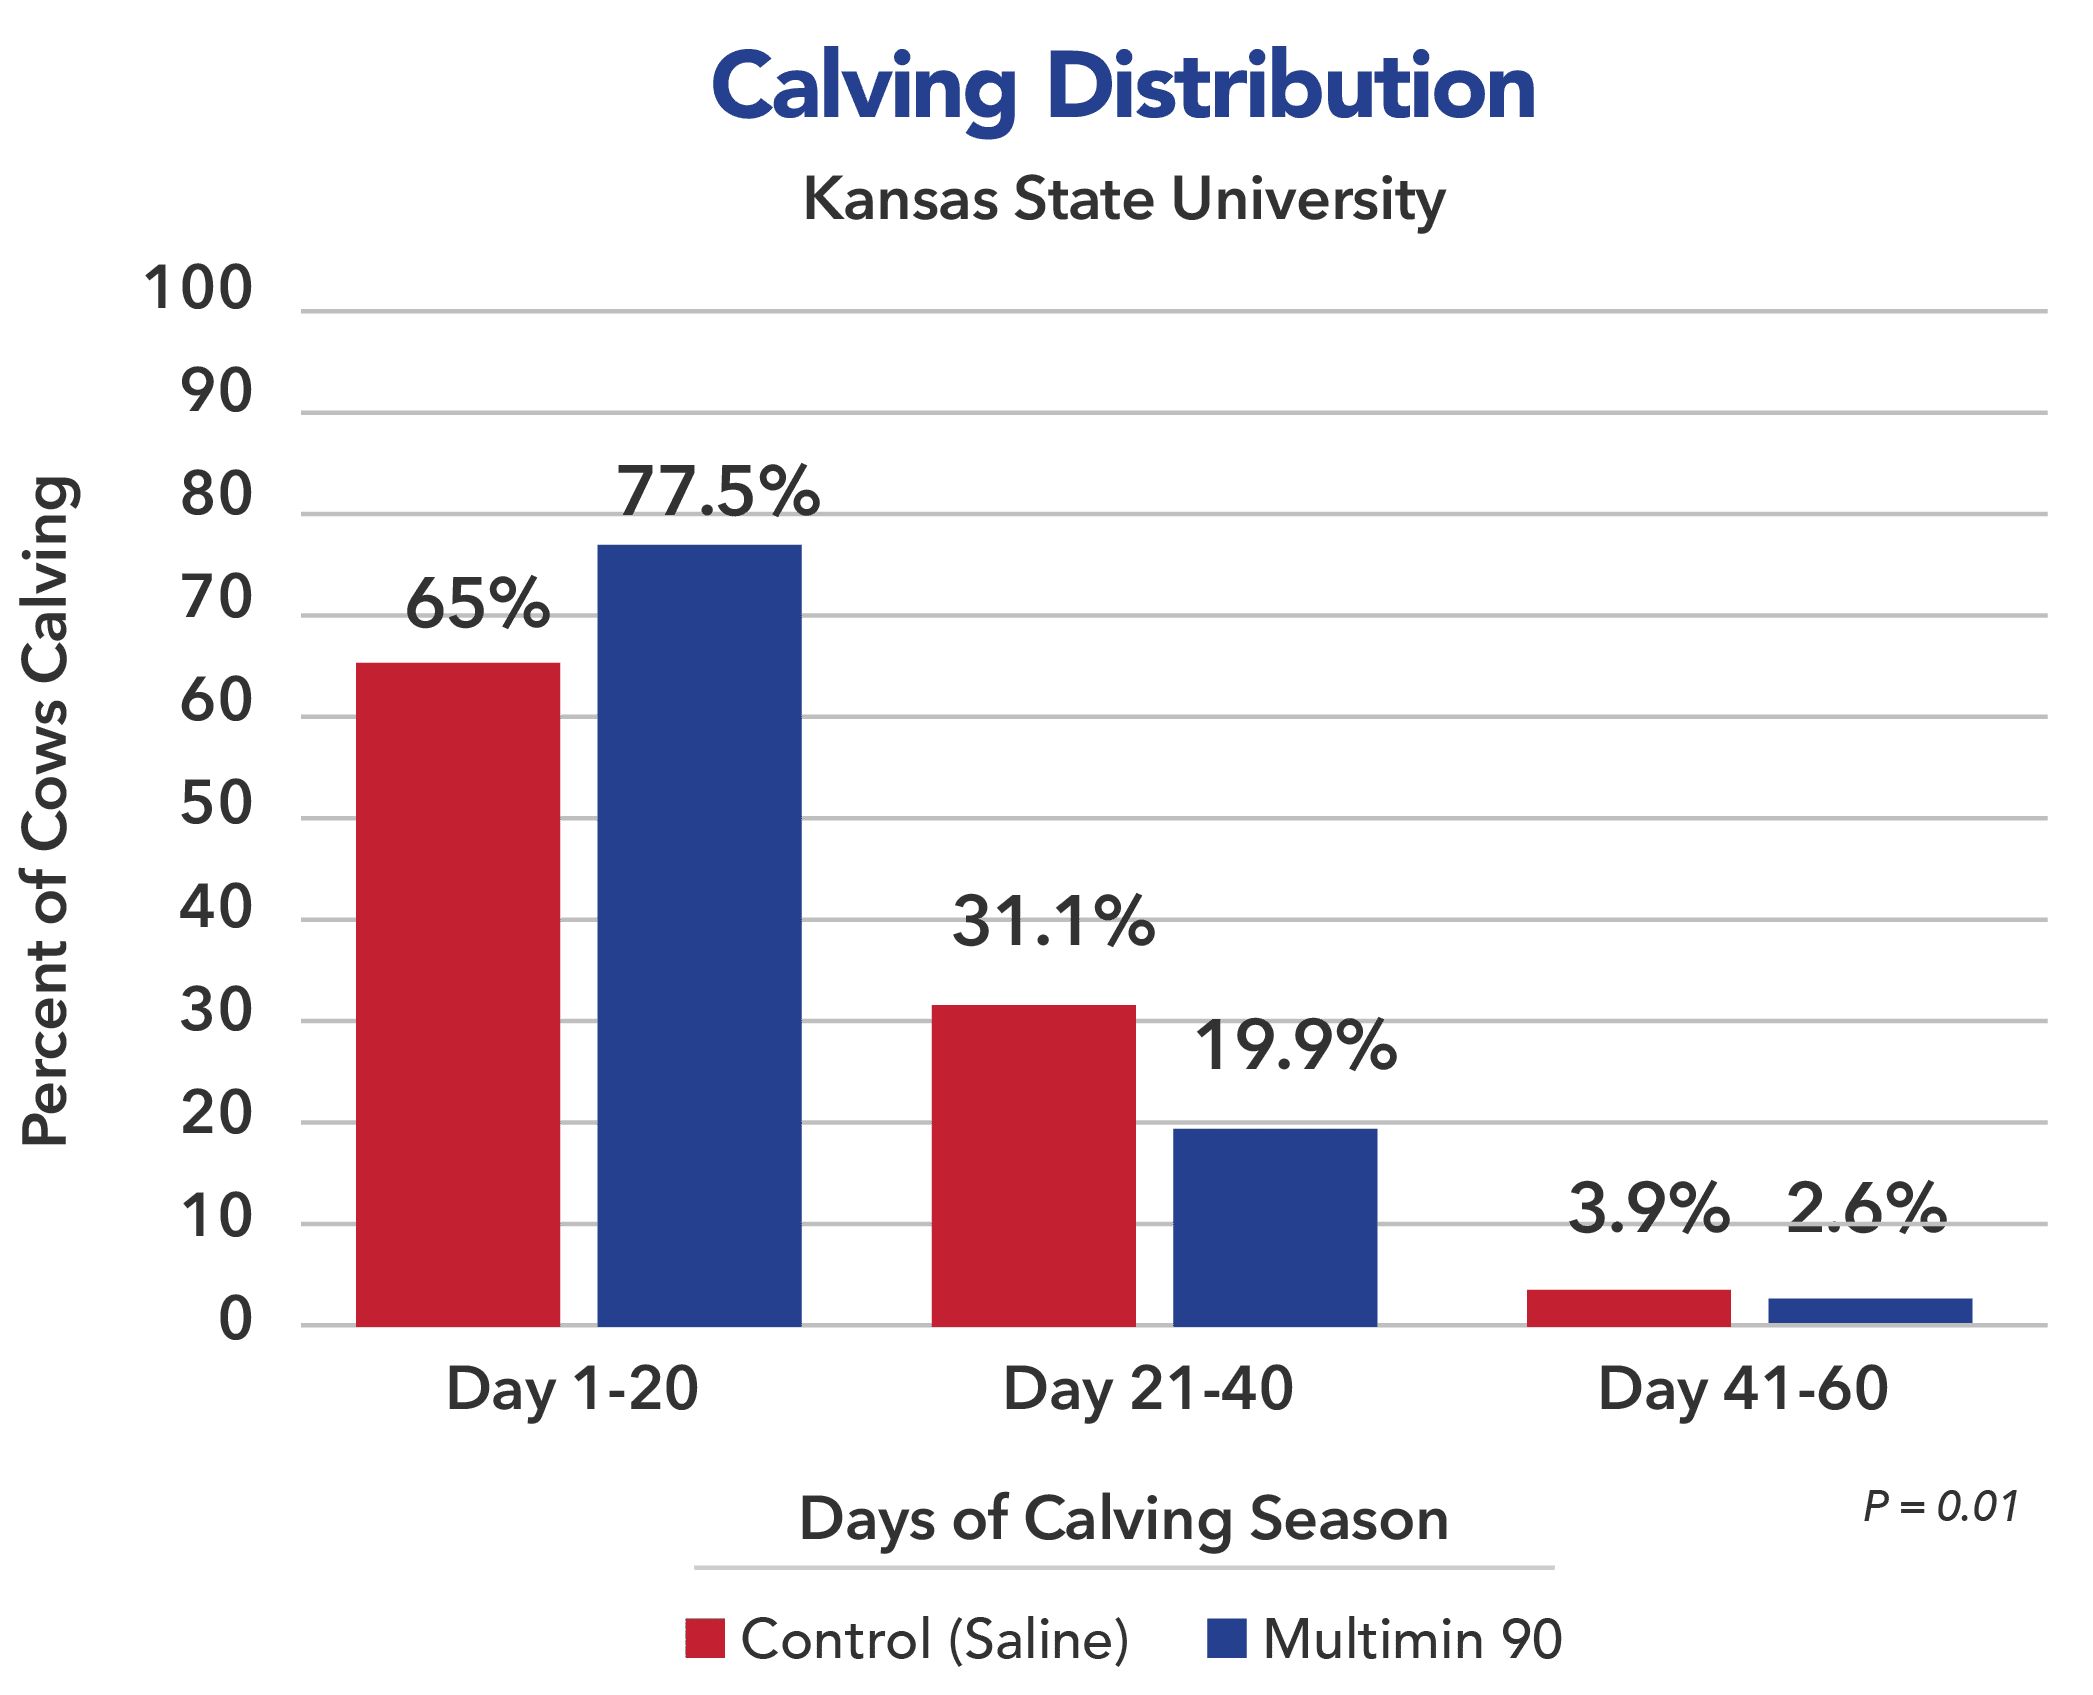 Mulitimin 90 Calving Distribution